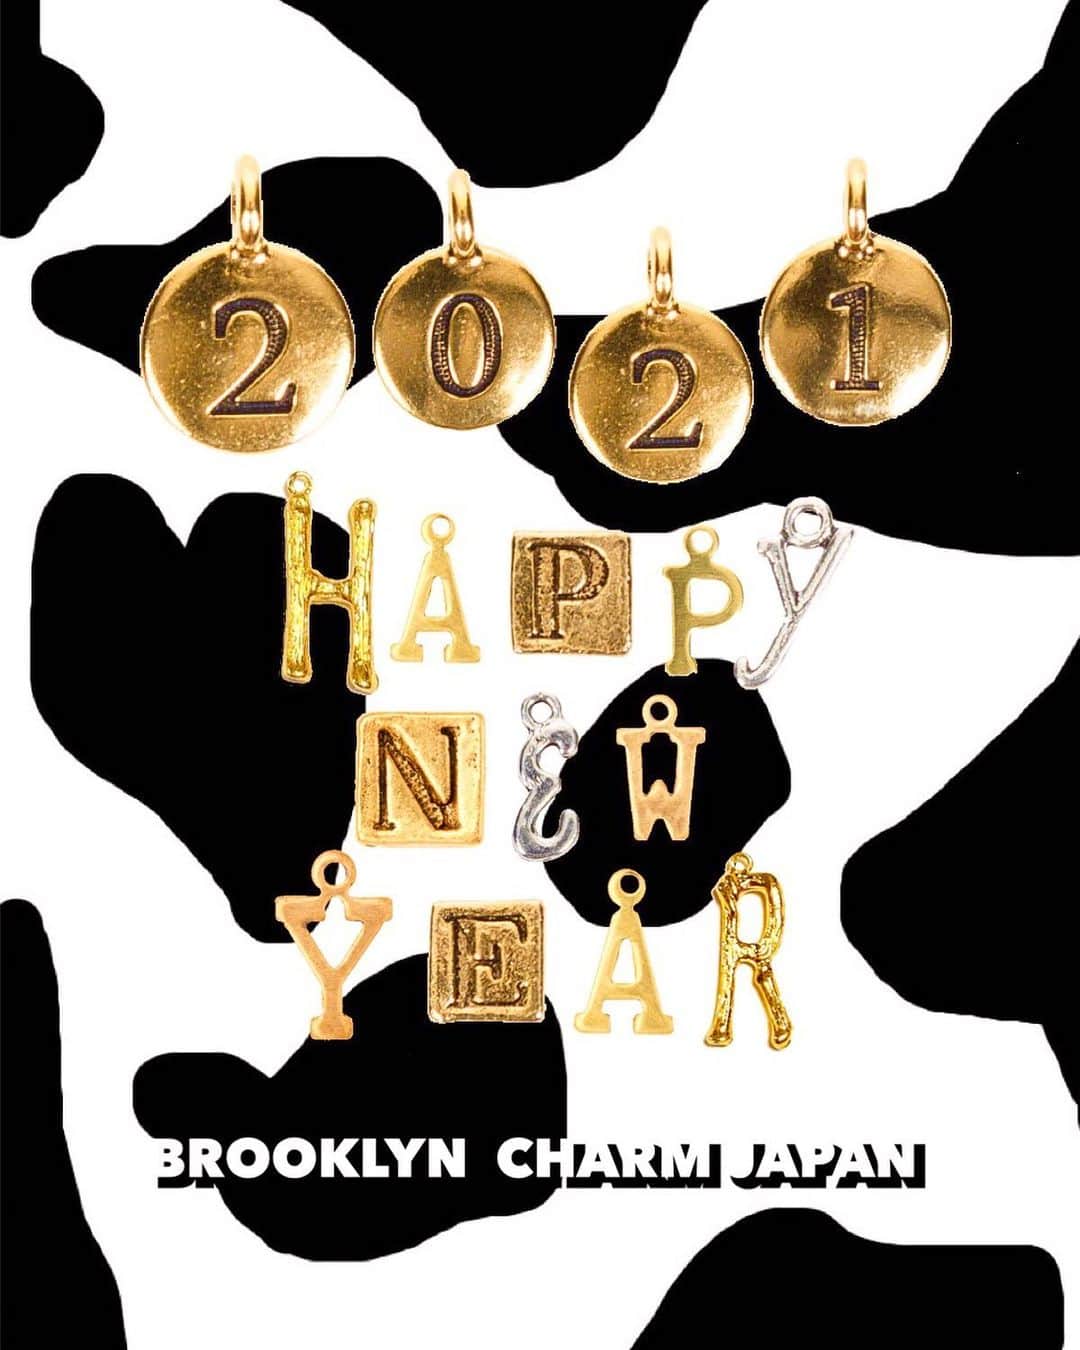 Brooklyn Charm Japanのインスタグラム：「_ ㊗️HAPPY NEW YEAR🌅﻿ 2021年もBrooklyn Charm Japanを﻿ よろしくお願いいたします🐄❤️﻿ ﻿ Brooklyn Charm WEBショップでは﻿ NEW YEAR SALEを開催中❣️﻿ ﻿ WEBショップ内の商品が﻿ MAX７０％OFF‼️﻿ ※一部SALE対象外の商品もございます。﻿ ﻿ 大人気のチャームやアクセサリーが﻿ とってもお買い得に💍💎✨﻿ ﻿ NEW YEAR SALEは1/31まで⏰﻿ 年に一度のBIG SALE‼️﻿ お得なこの機会にお見逃しなく💡﻿ 5,000円(税込)以上のお買上げで送料無料🚚💨﻿ ﻿ ----------------- ﻿ 【WEBショップ年末年始のお知らせ】 ﻿ ※本日以降の注文に関しましては1月4日(月)より順次発送となります。 ﻿ 配達日時のご指定のお時間等、ご注意ください。  - #brooklyncharmjapan #brooklyncharm #brooklyn #ny #accessary #handmade #ブルックリンチャーム #ブルックリン #ニューヨーク #アクセサリー #オリジナル #オリジナルアクセサリー #ハンドメイド #ハンドメイドアクセサリー #ネックレス #ブレスレット #ピアス #イヤリング #リング #ワイヤーリング #SALE」